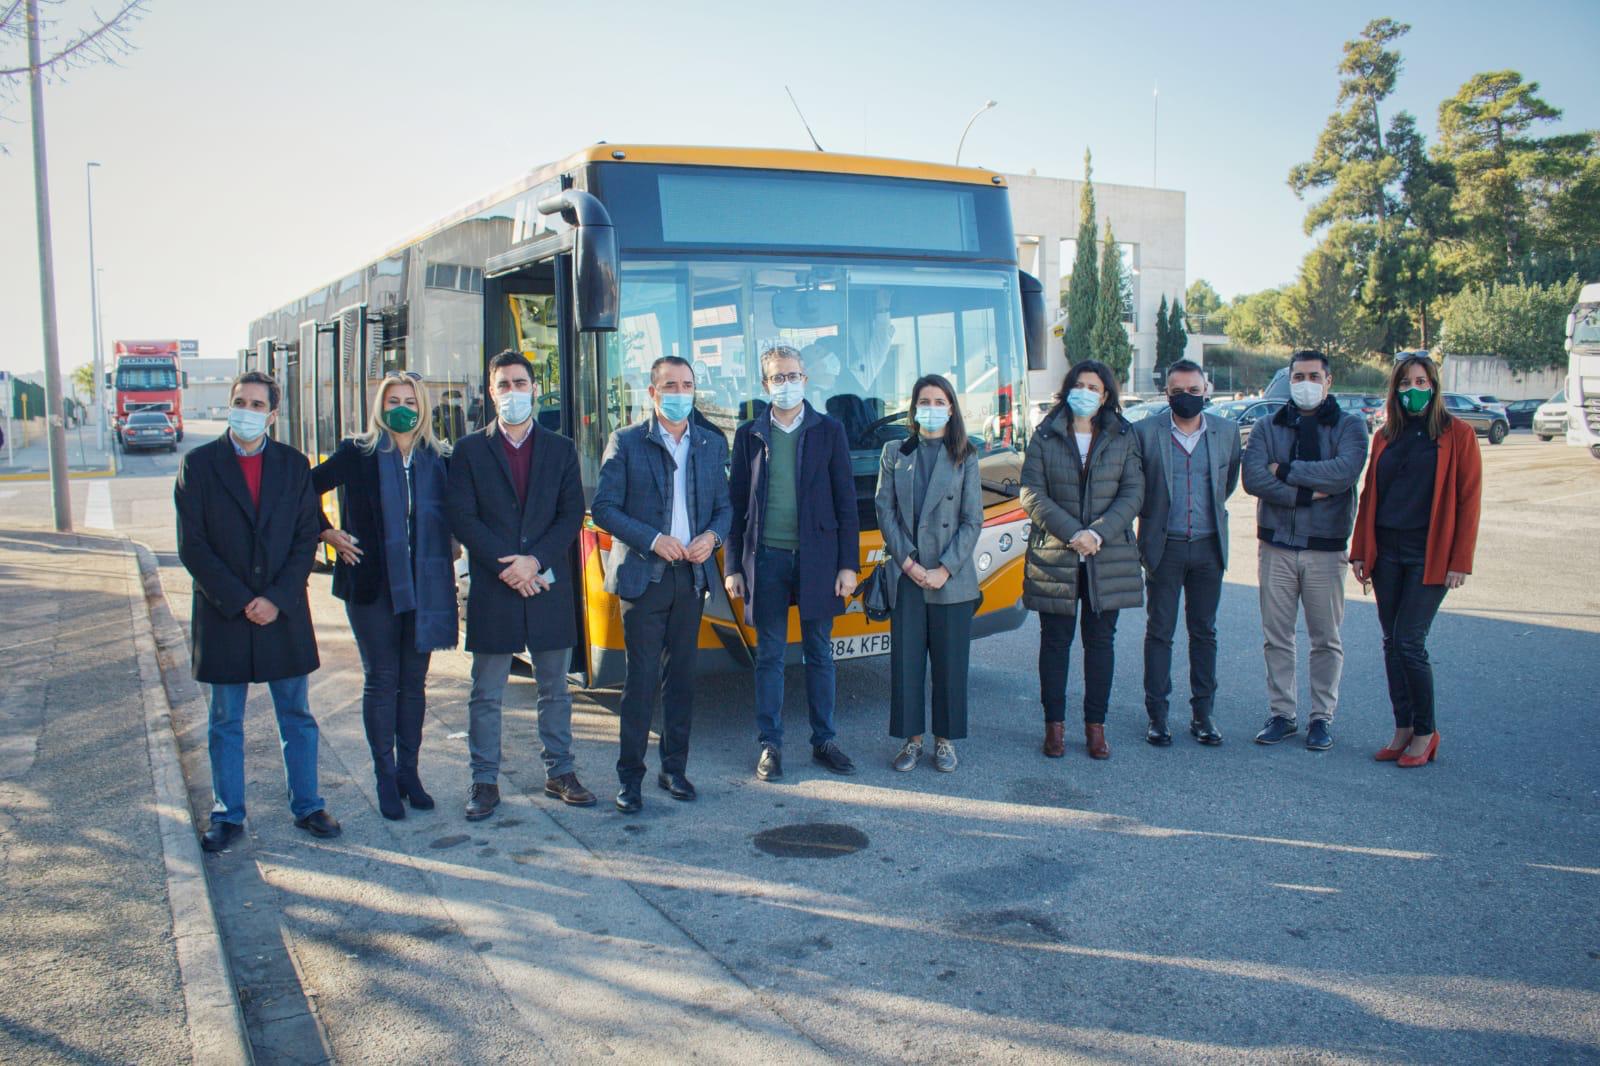 Arcadi España informa sobre el inicio del servicio de autobús lanzadera...